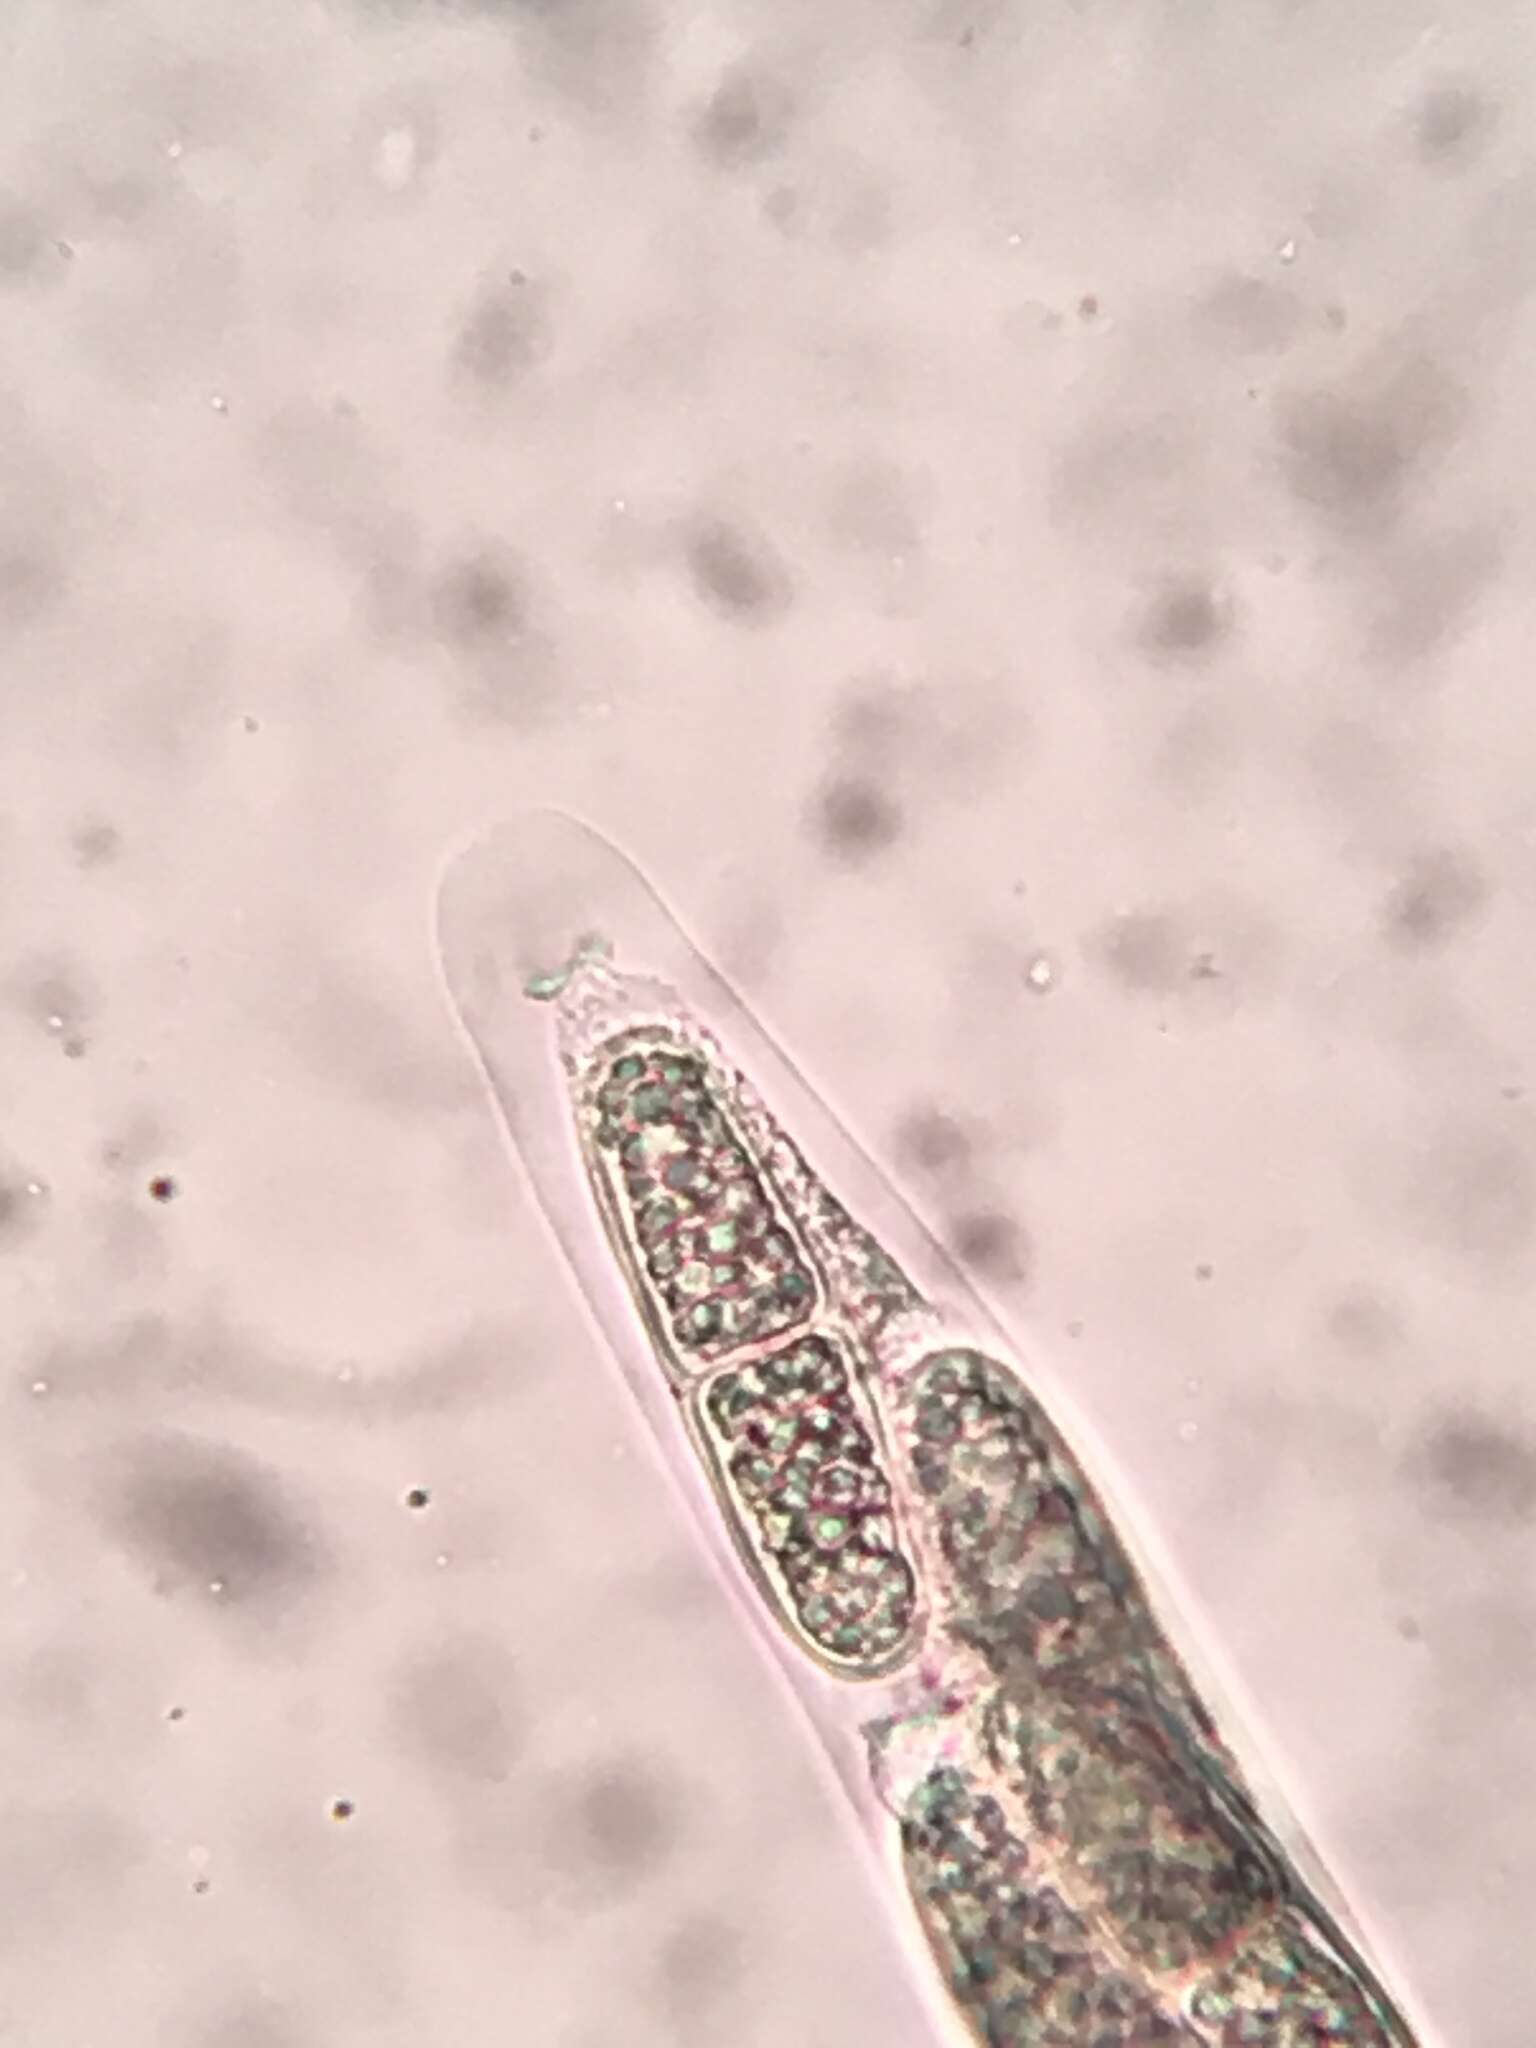 Prosthecium appendiculatum (G. H. Otth) M. E. Barr 1978的圖片